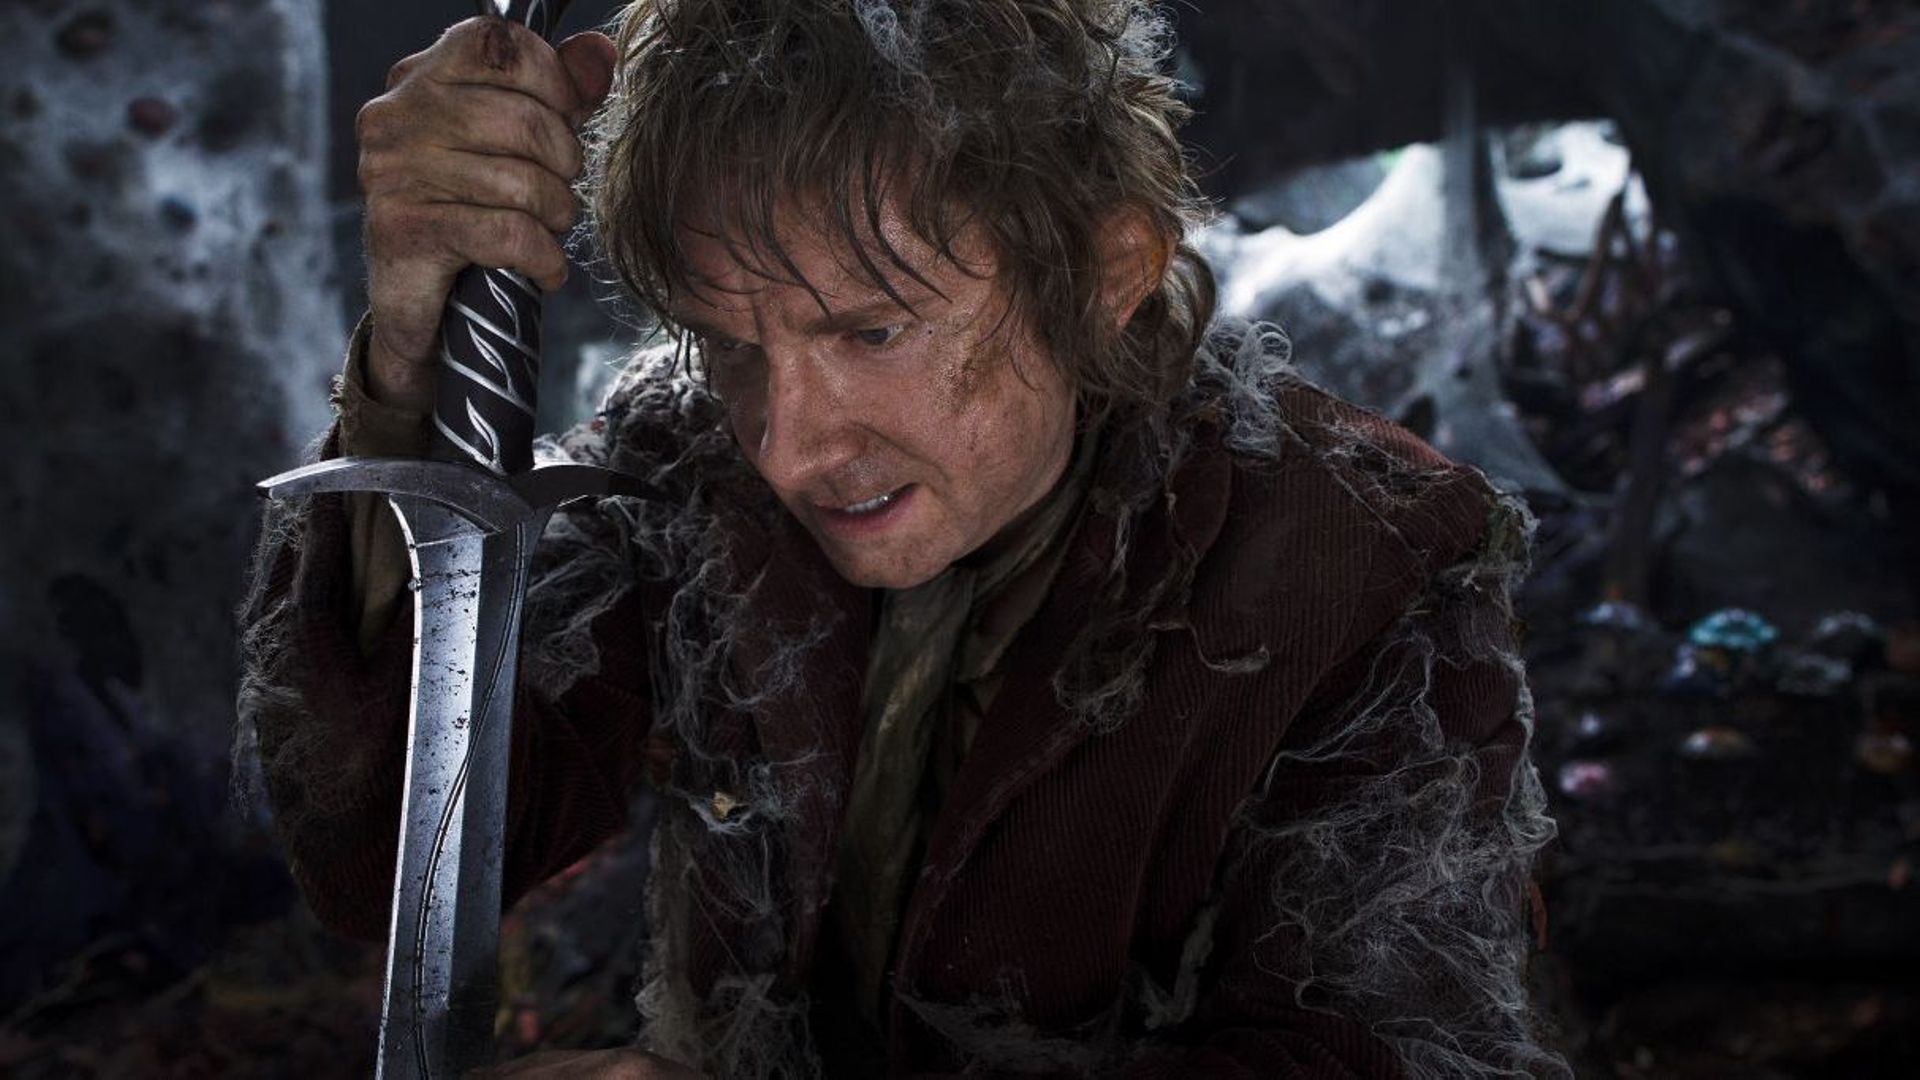 Bande-annonce : Bilbon face à Smaug pour la deuxième partie du "Hobbit"